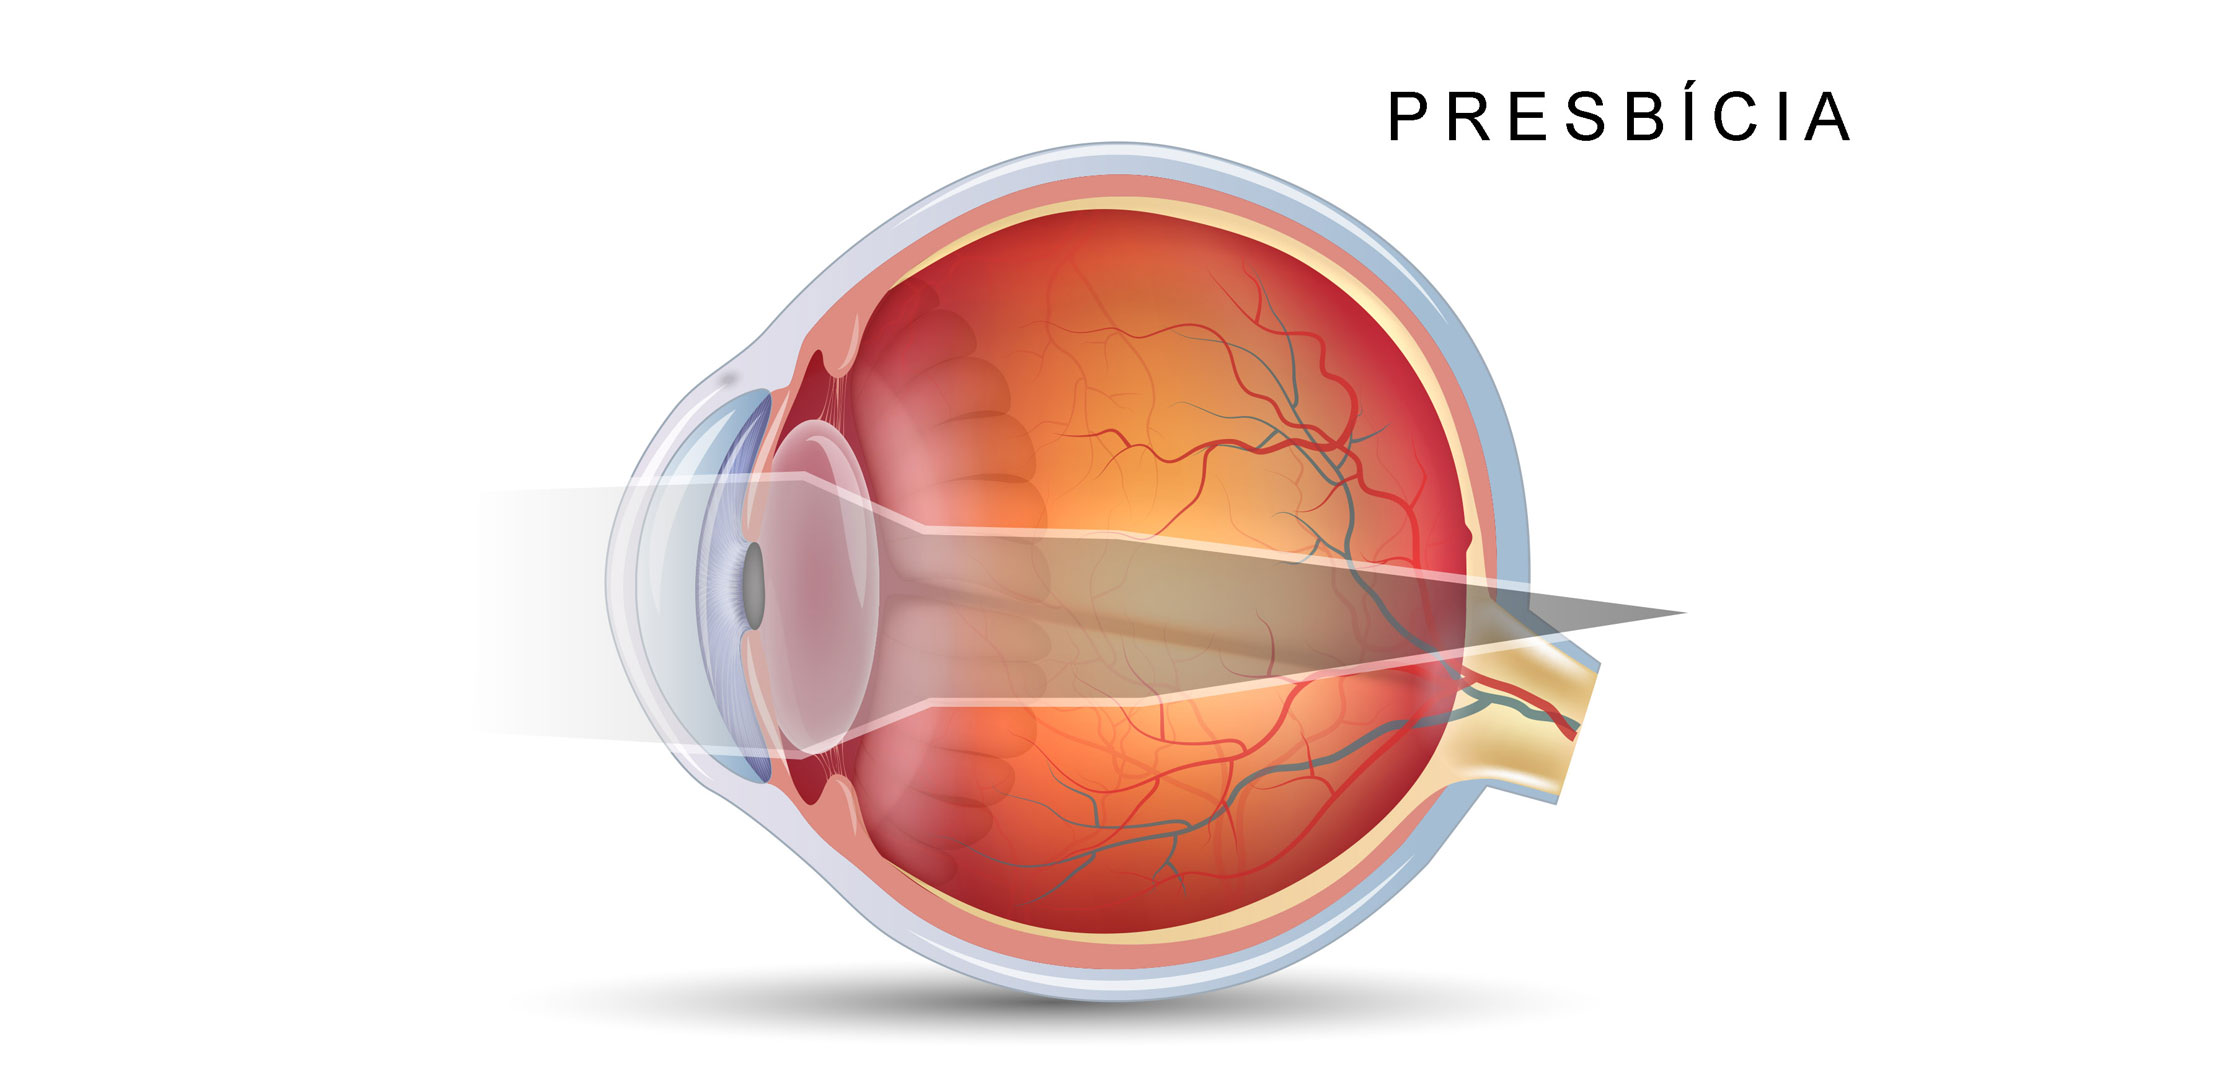 hipermetropia e astigmatismo presbicia